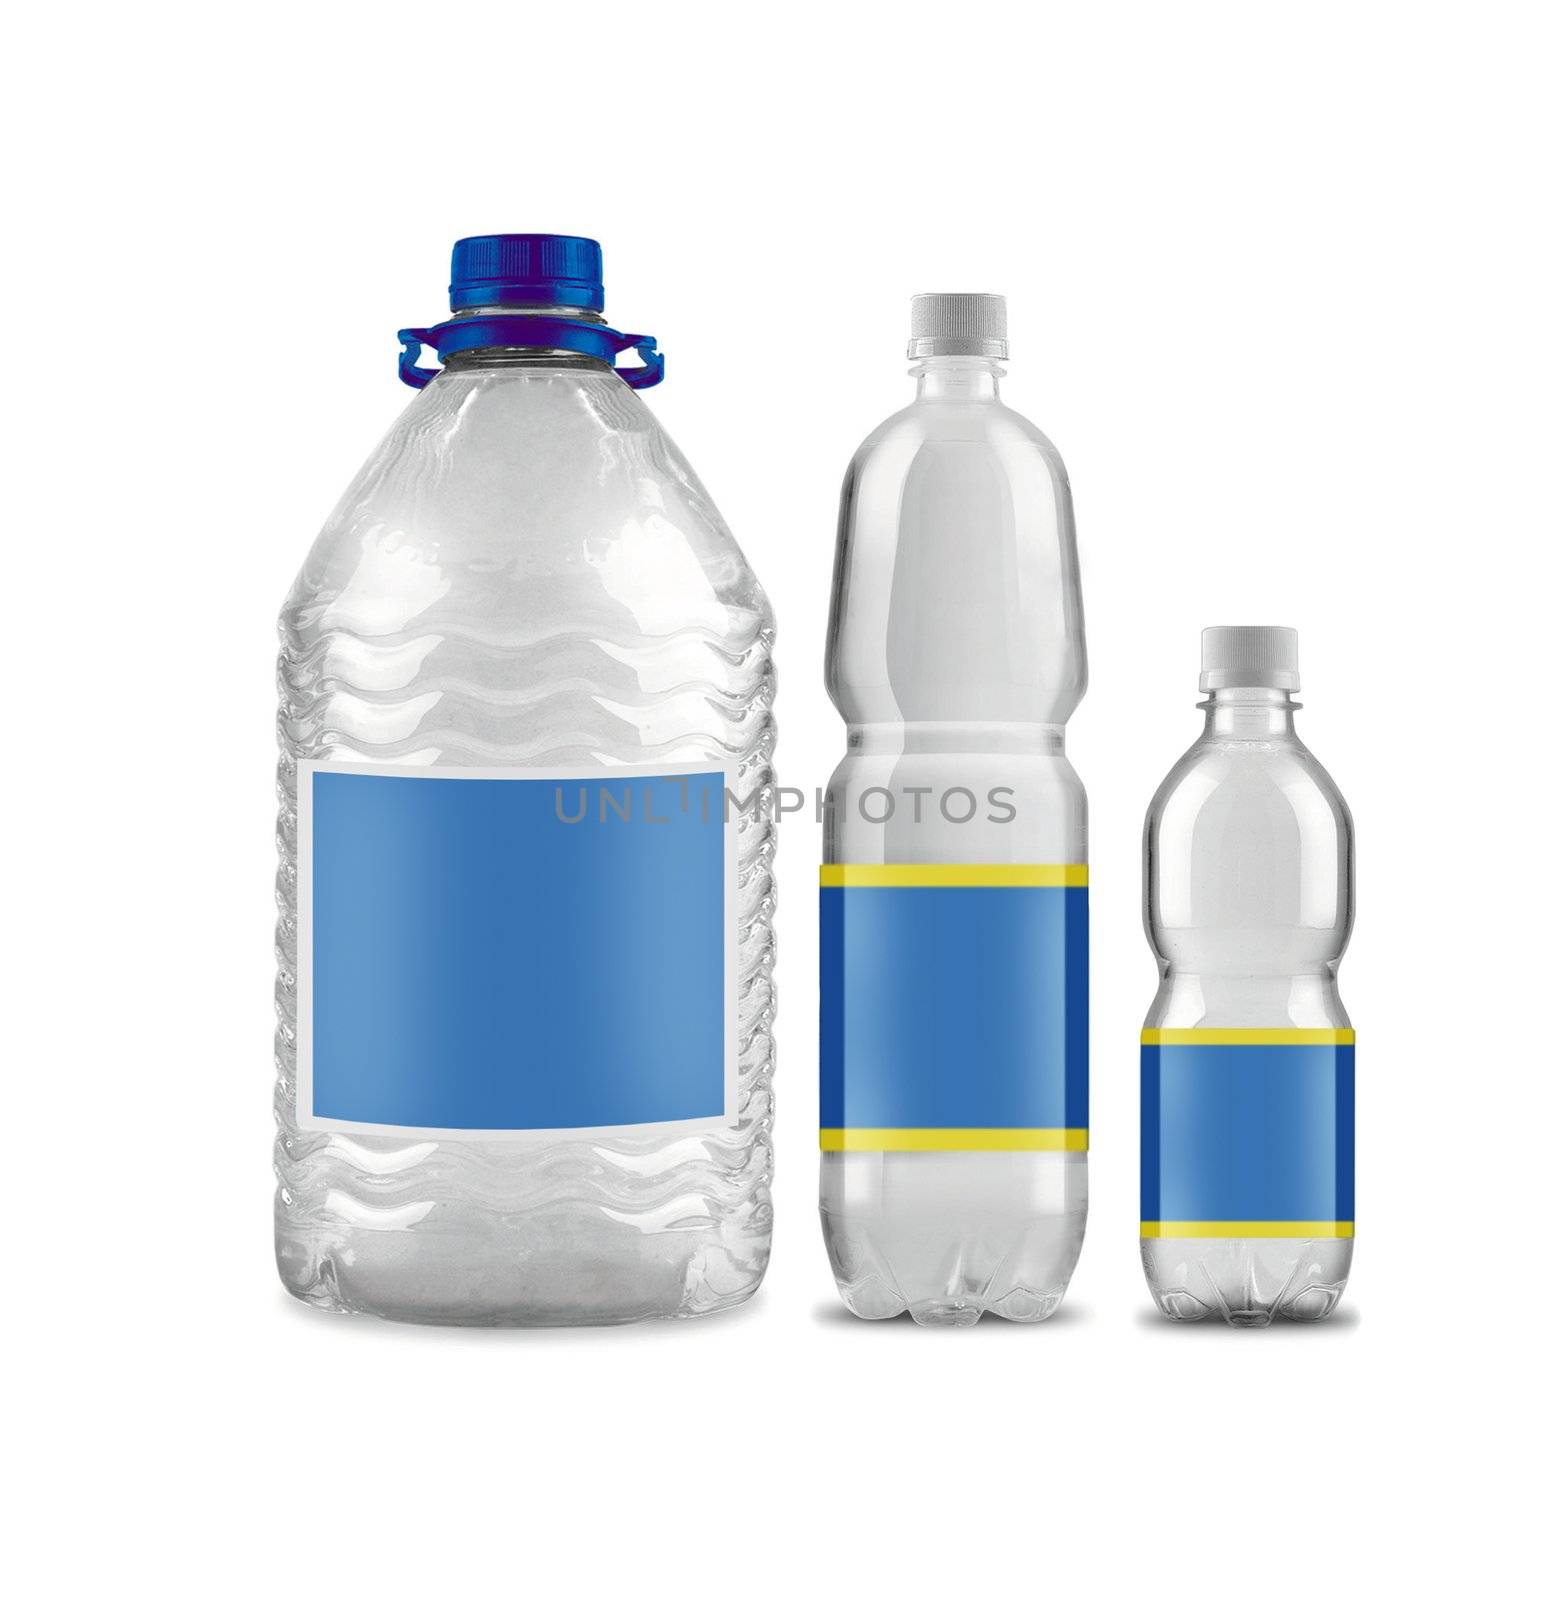 Bottled water by ozaiachin